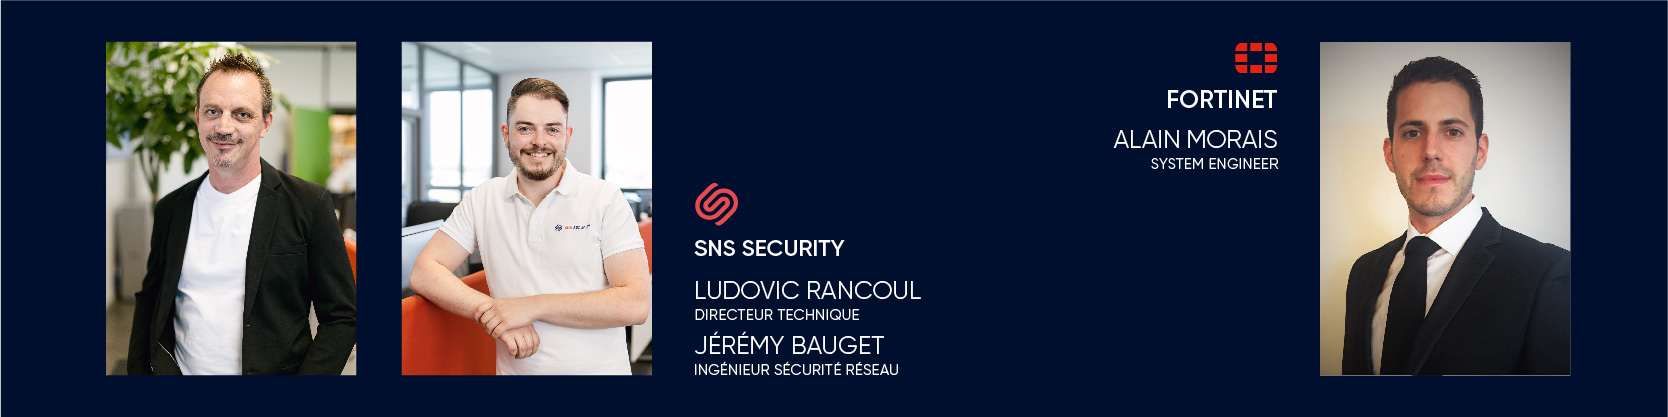 Avec nos experts Ludovic RANCOUL, Jérémy BAUGET de SNS SECURITY et Alain MORAIS, FORTINET